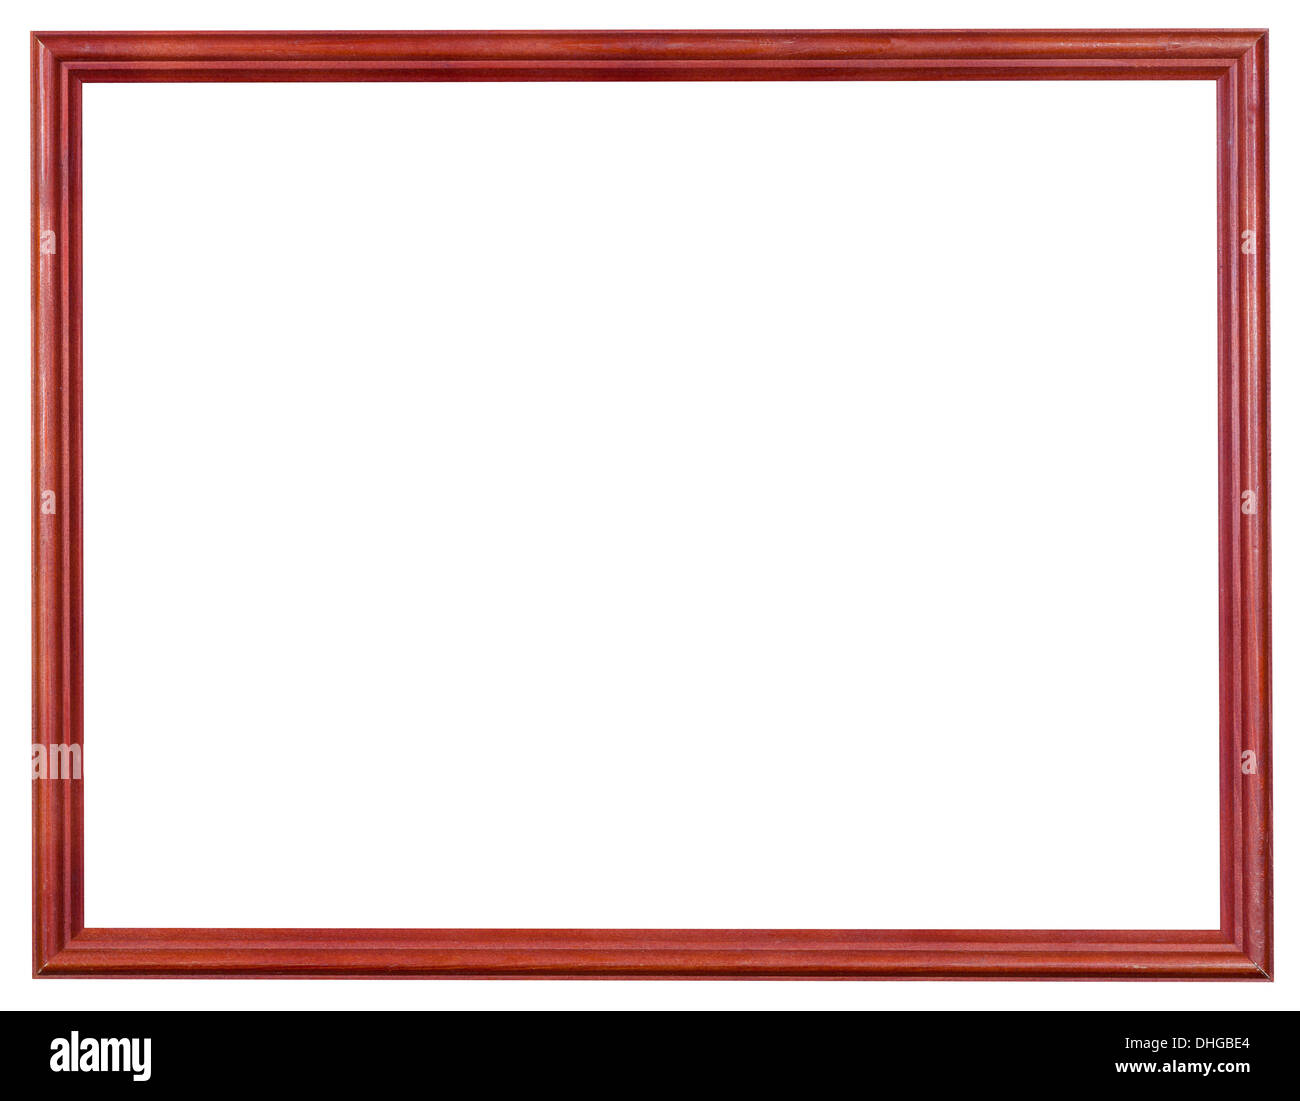 Rouge étroit cadre photo moderne en bois avec cut out toile isolé sur fond blanc Banque D'Images